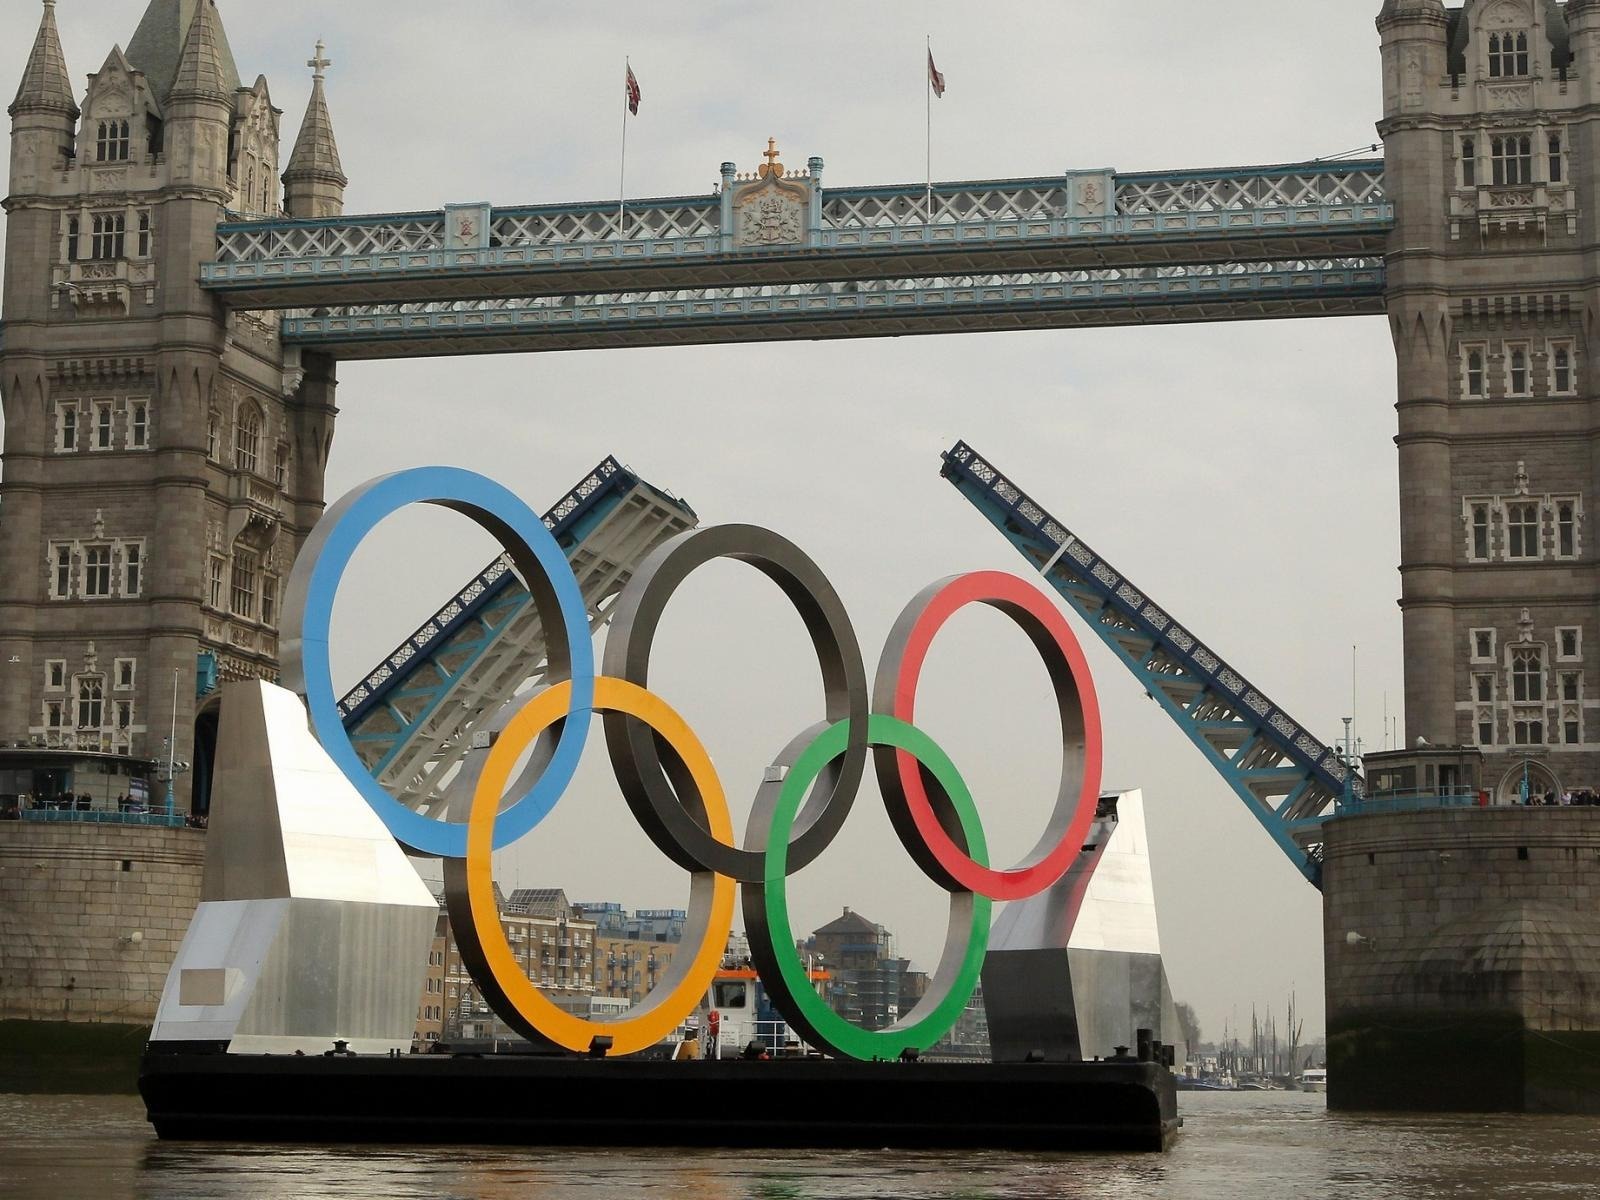 Londres 2012 Olimpiadas fondos temáticos (2) #21 - 1600x1200